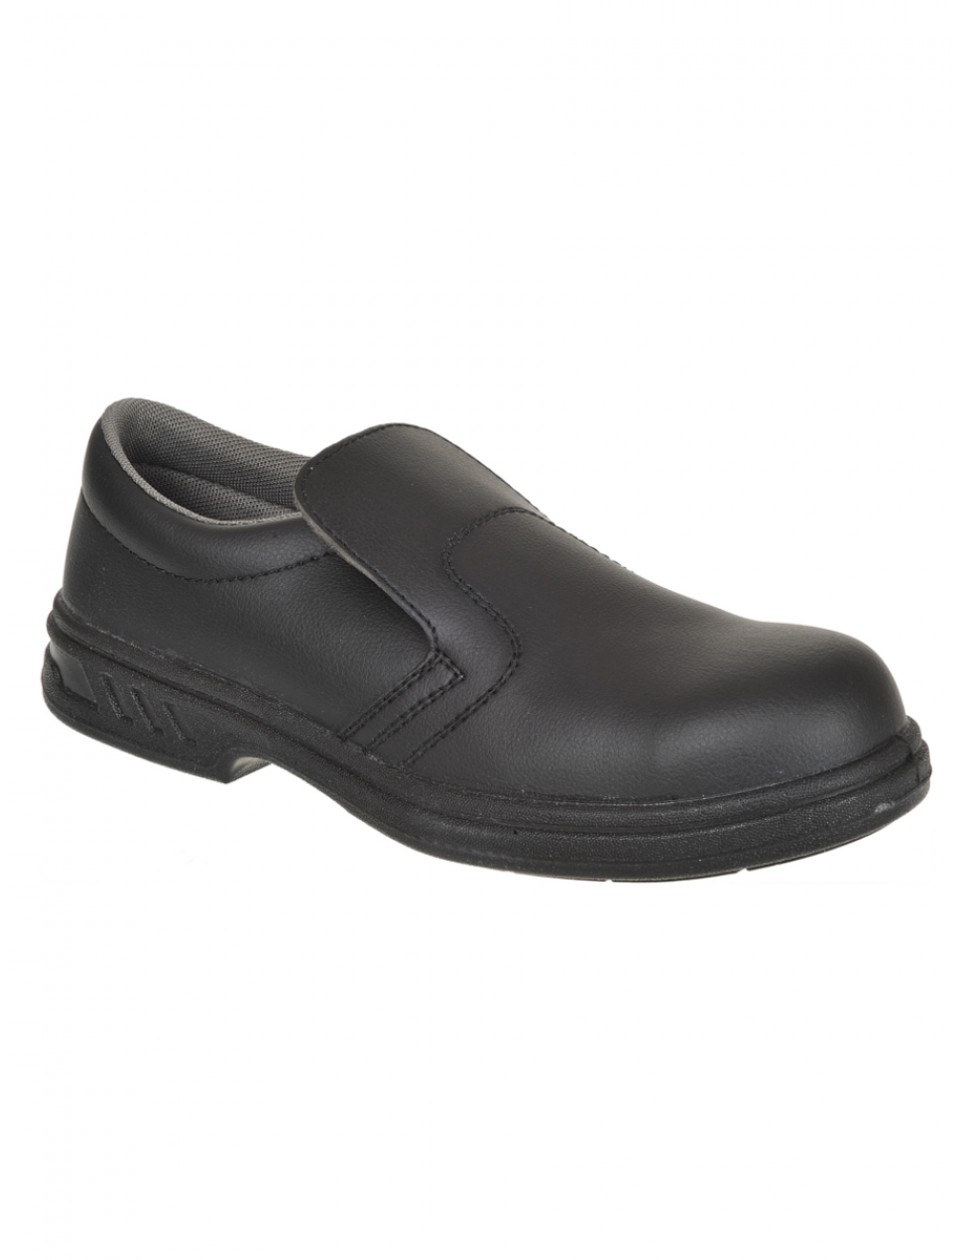 Portwest FW81 Slip-on Safety Shoe - Black